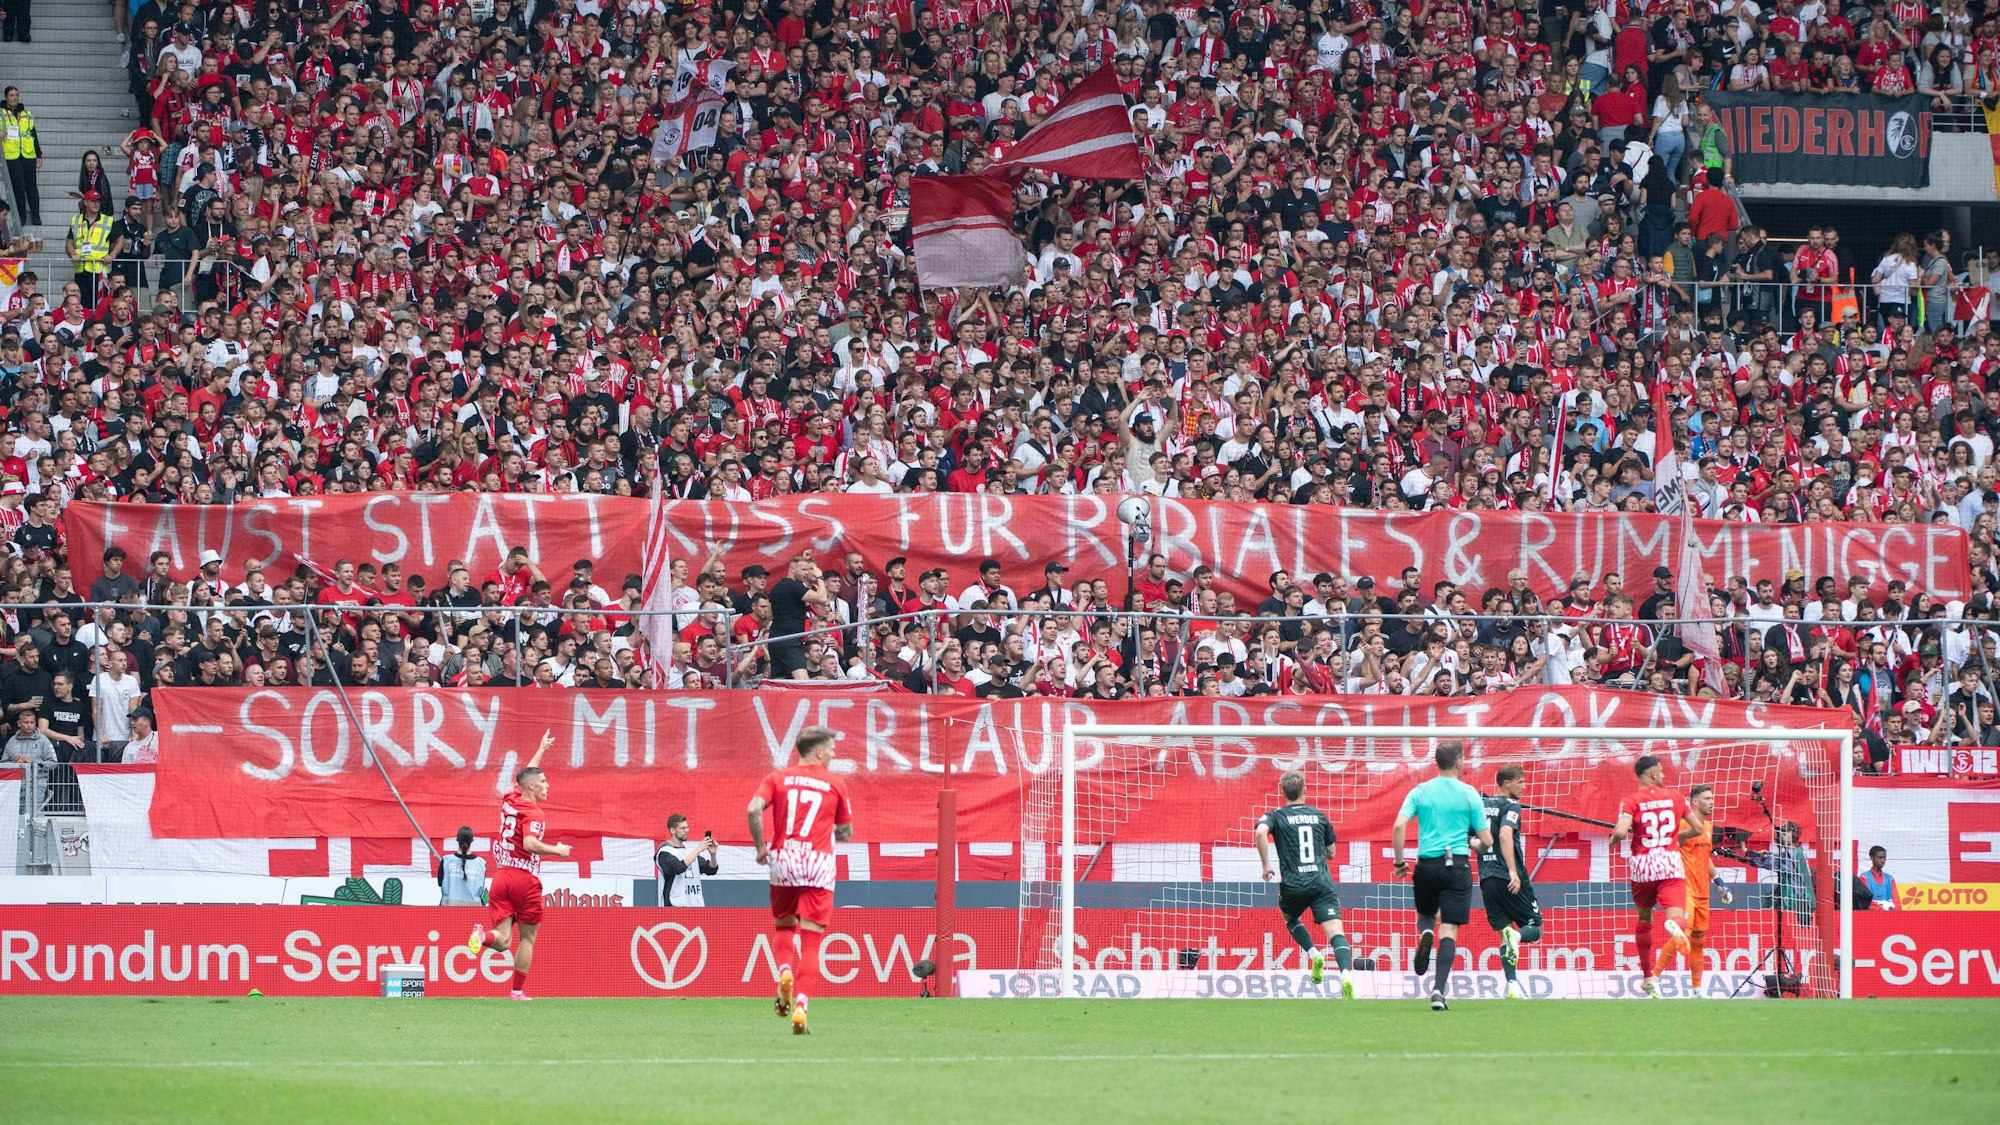 Die Fans des SC Freiburg positionierten sich mit einem Spruchband deutlich gegen den spanischen Verbandsboss Luis Rubiales nach seiner Kuss-Attacke.